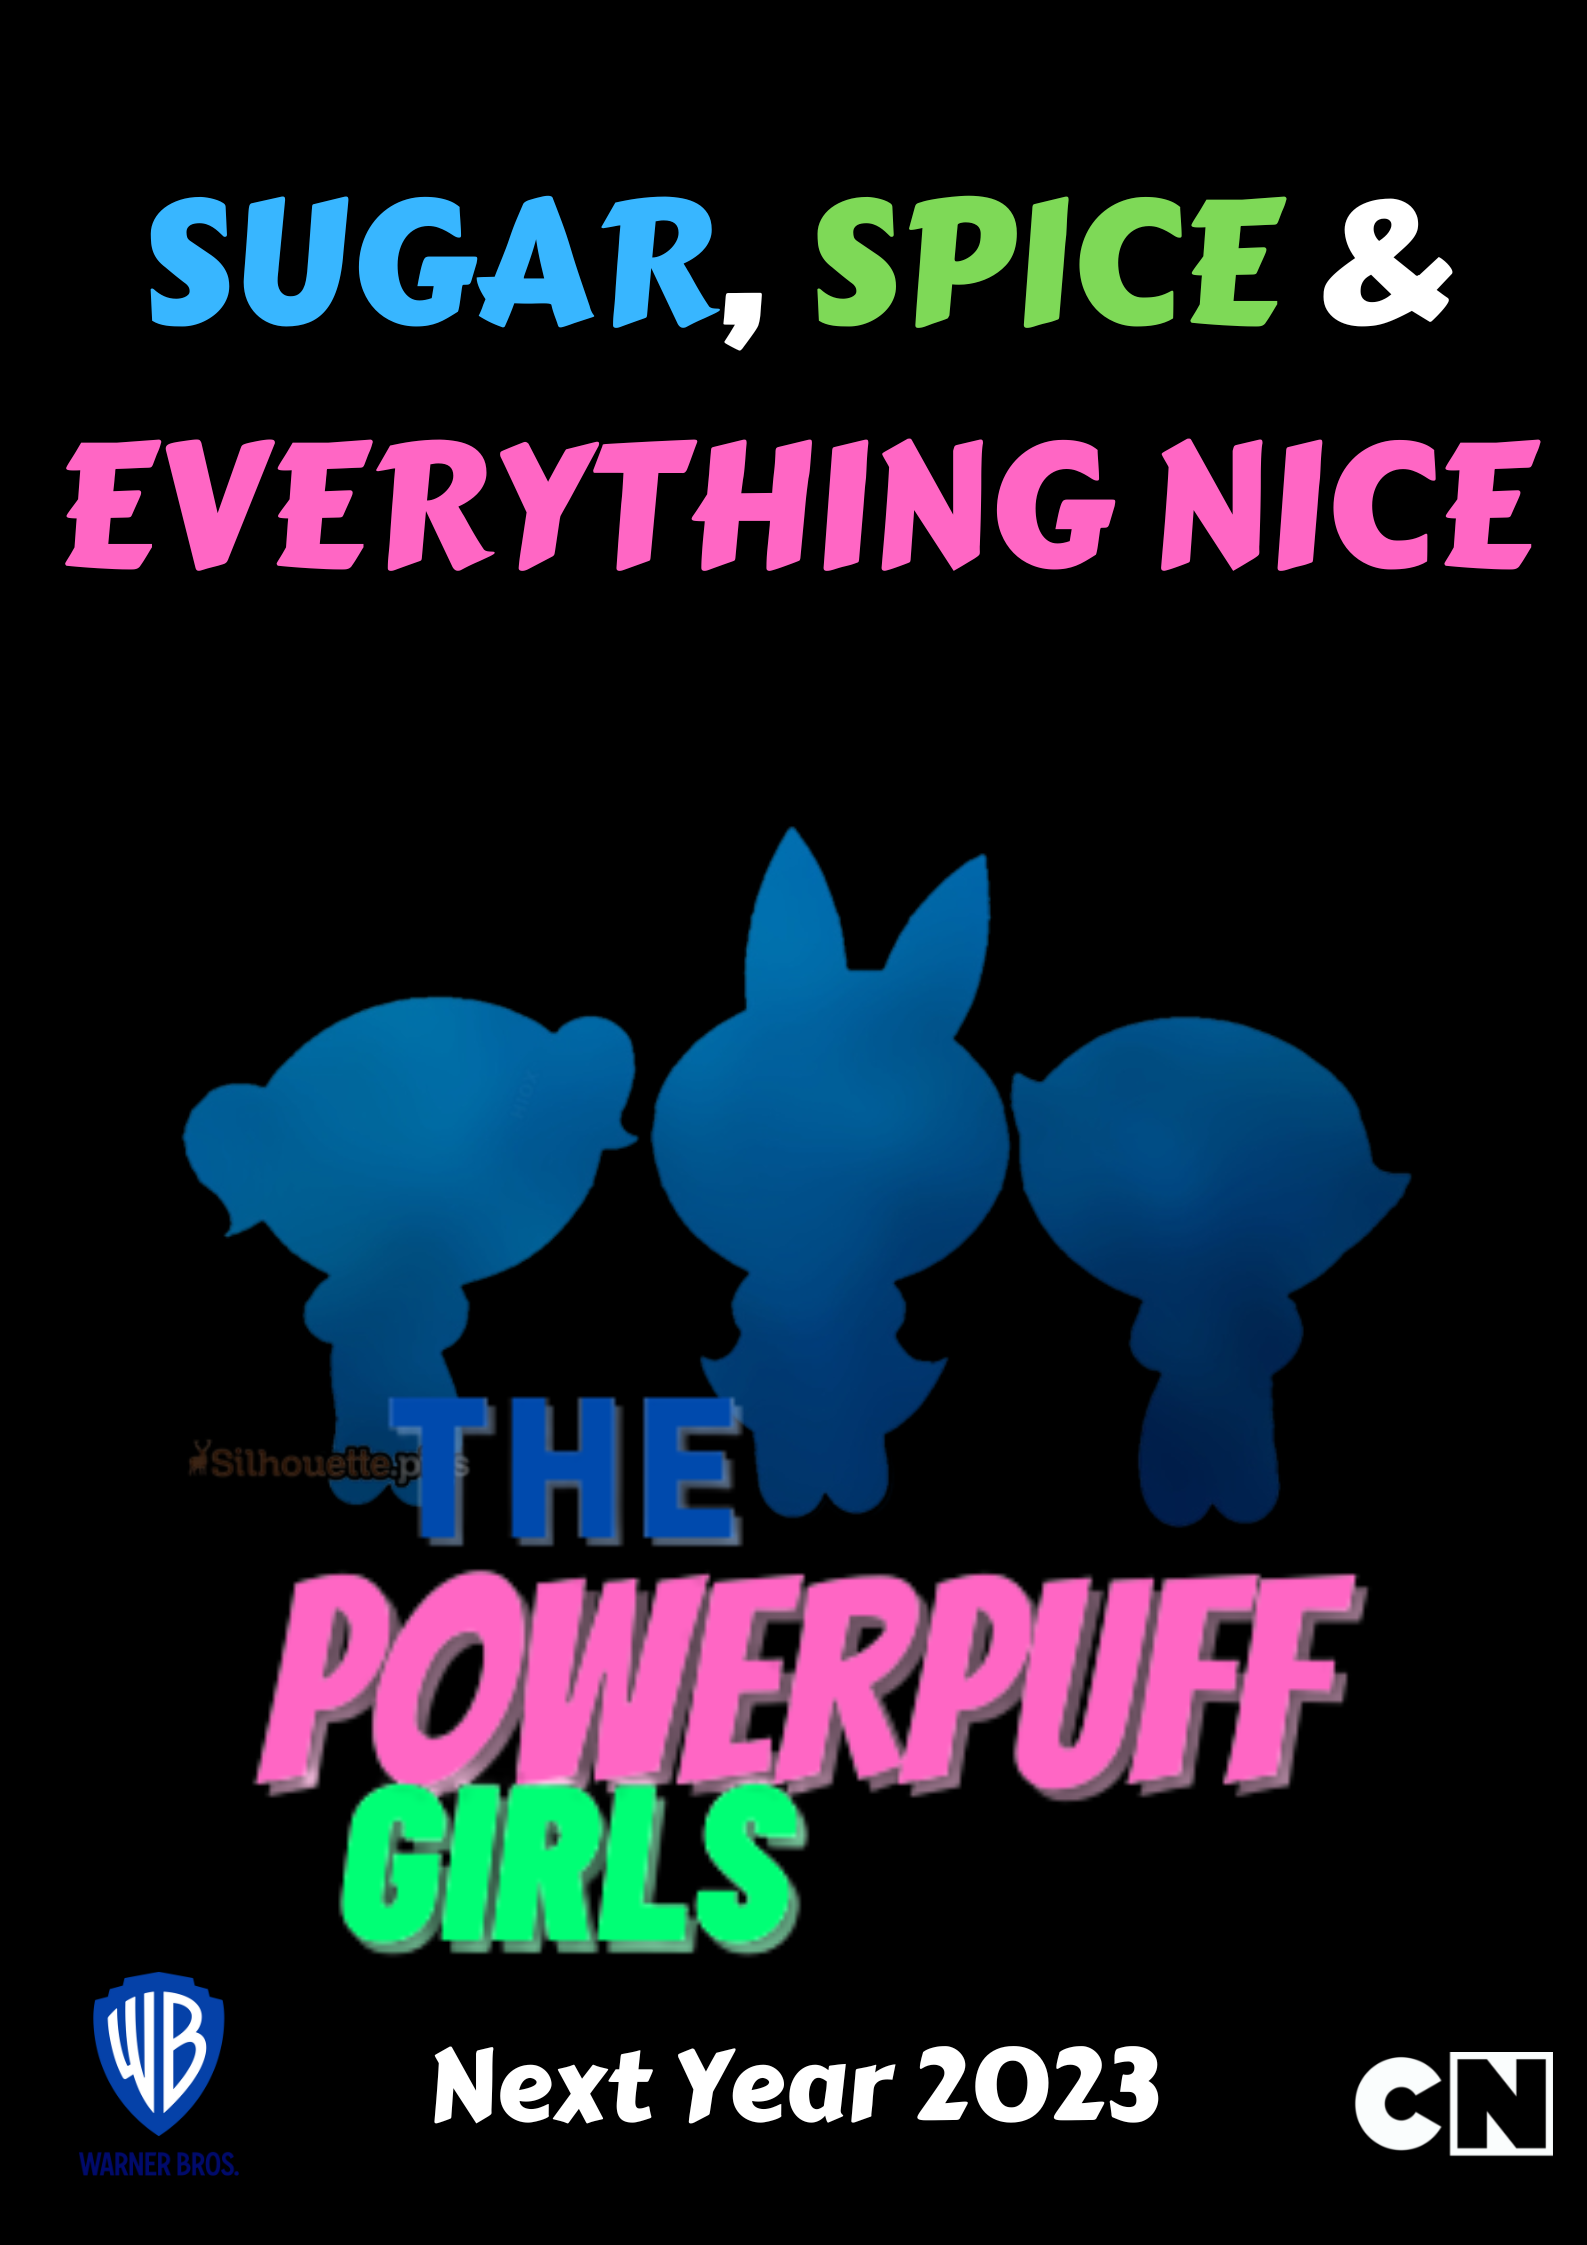 Warner Bros. celebrates 25 years of The Powerpuff Girls